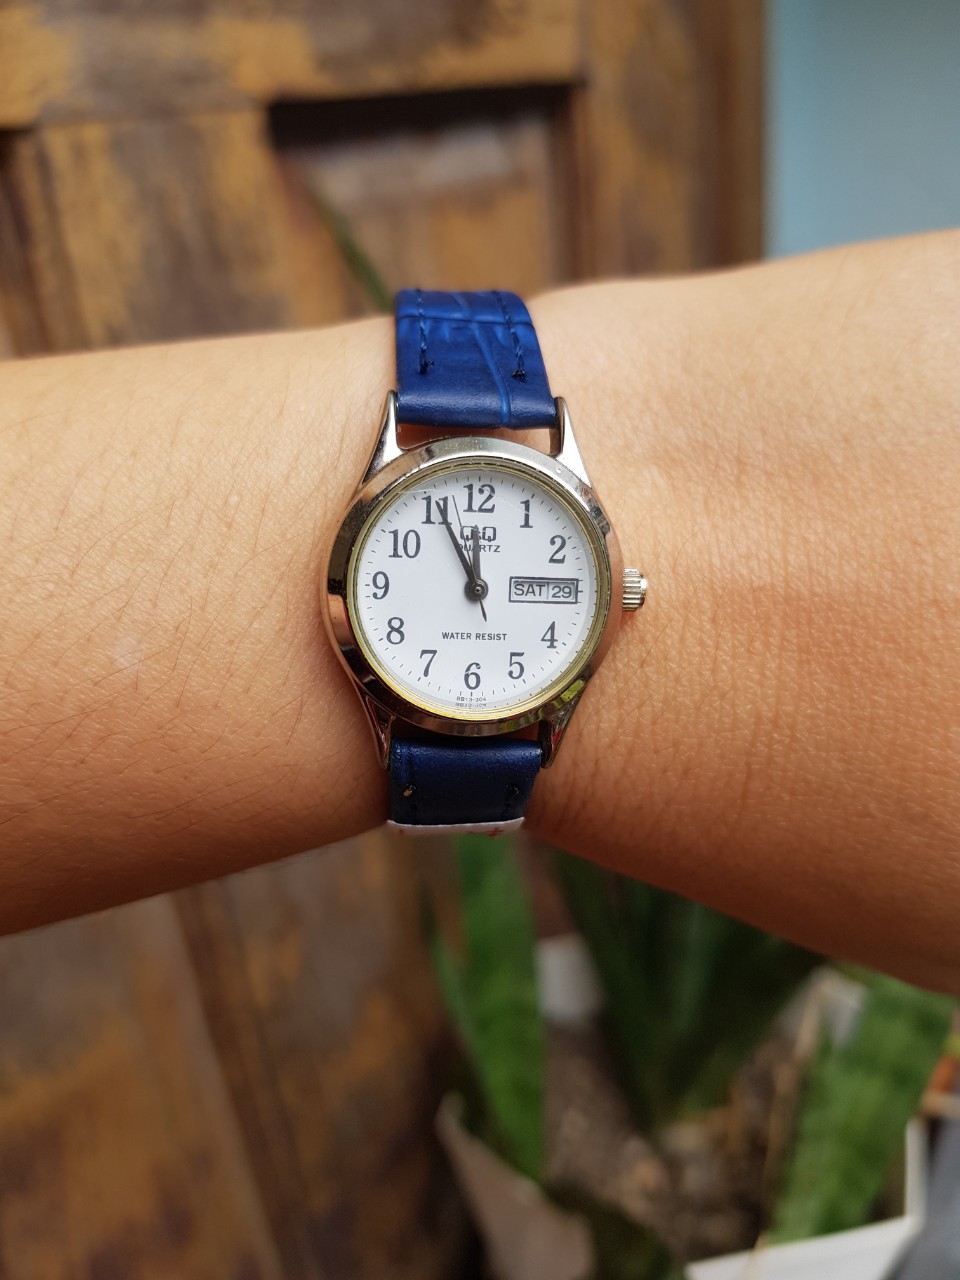 Đồng hồ nữ, hiệu QQ, dây da màu xanh, si nhật, mặt tròn, size mặt 22mm